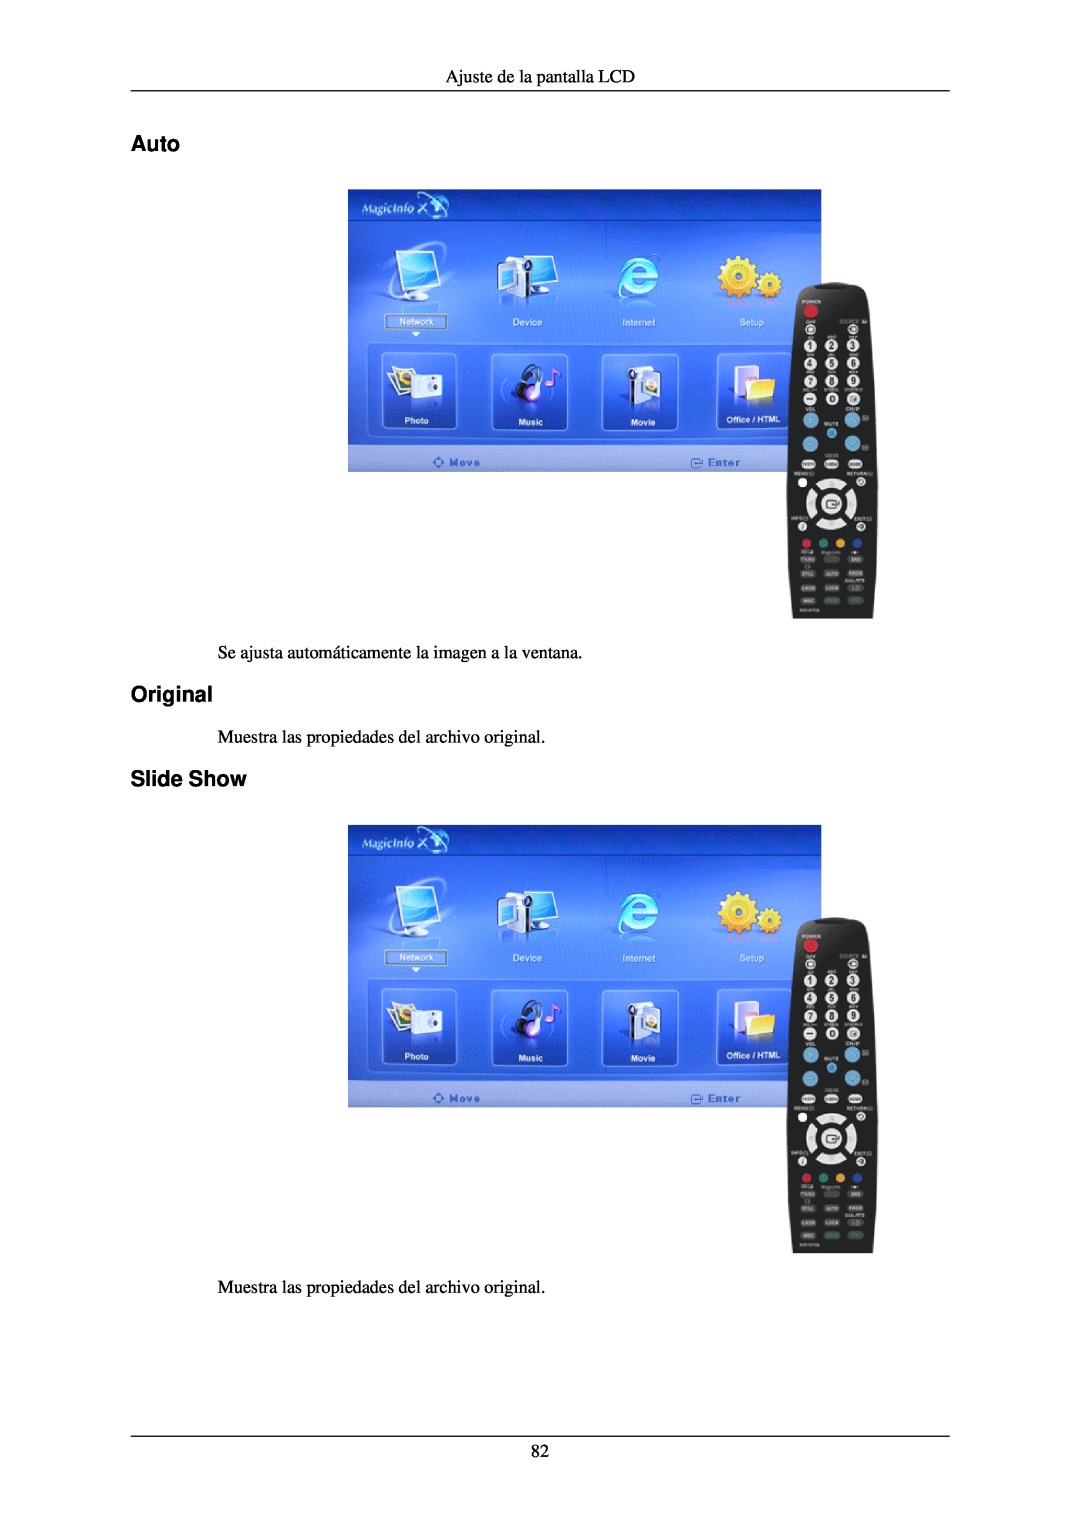 Samsung LH40TCQMBG/EN Auto, Original, Slide Show, Ajuste de la pantalla LCD, Muestra las propiedades del archivo original 